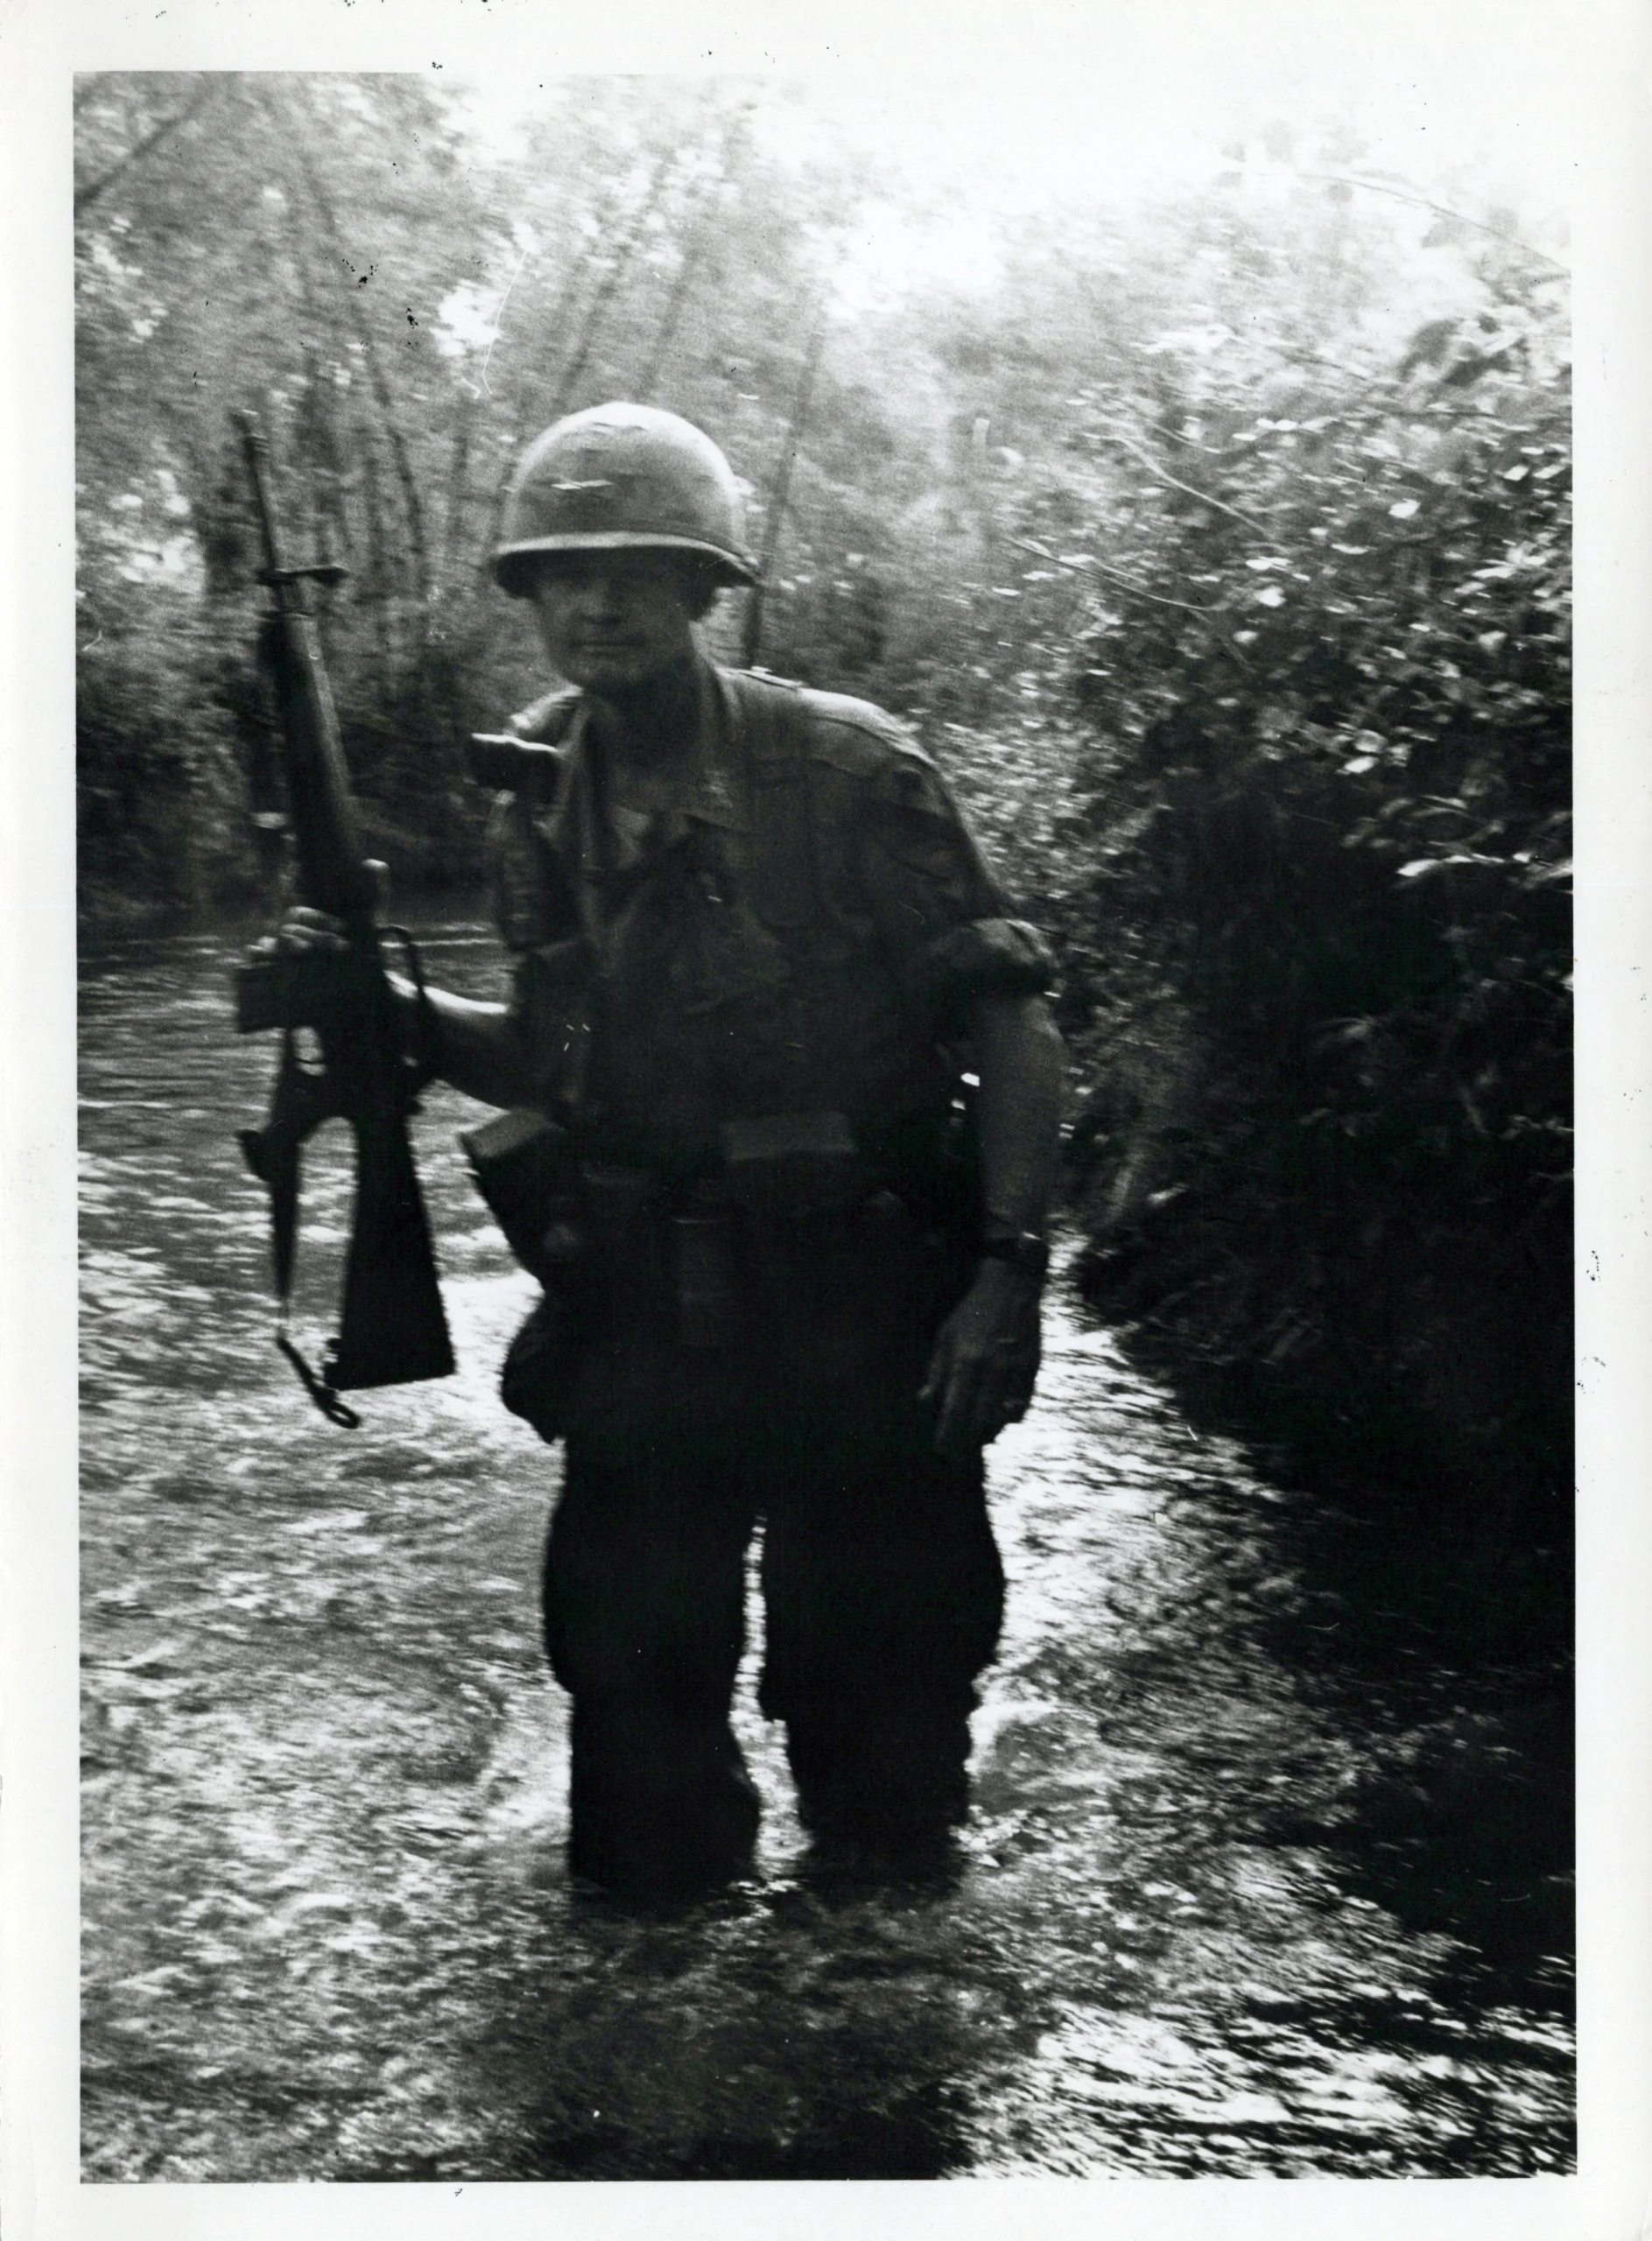 Moore in Vietnam - 21